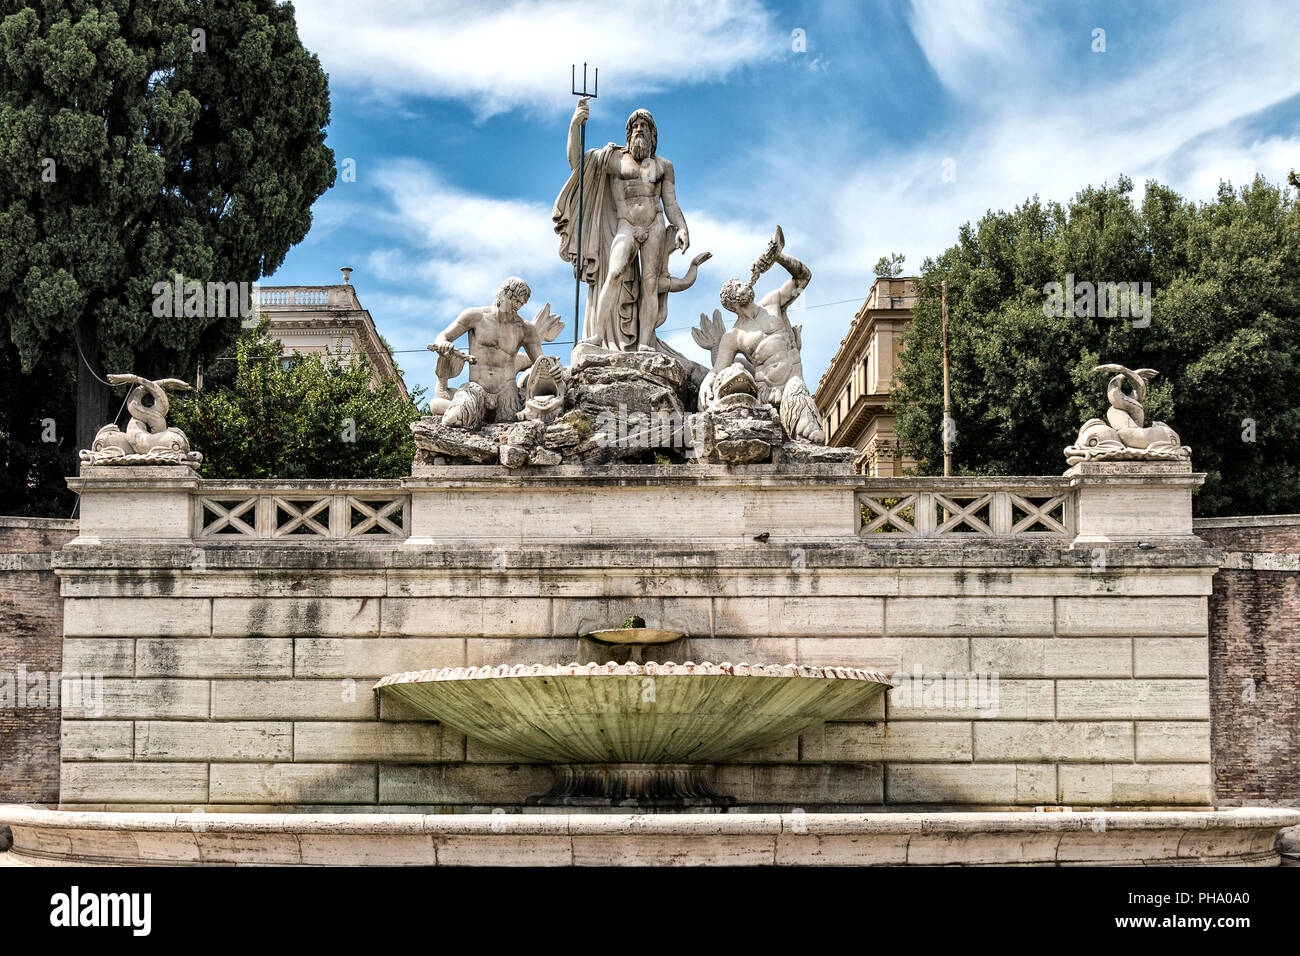 Fontaine de Neptune de la Piazza del Popolo, Rome, Italie Banque D'Images